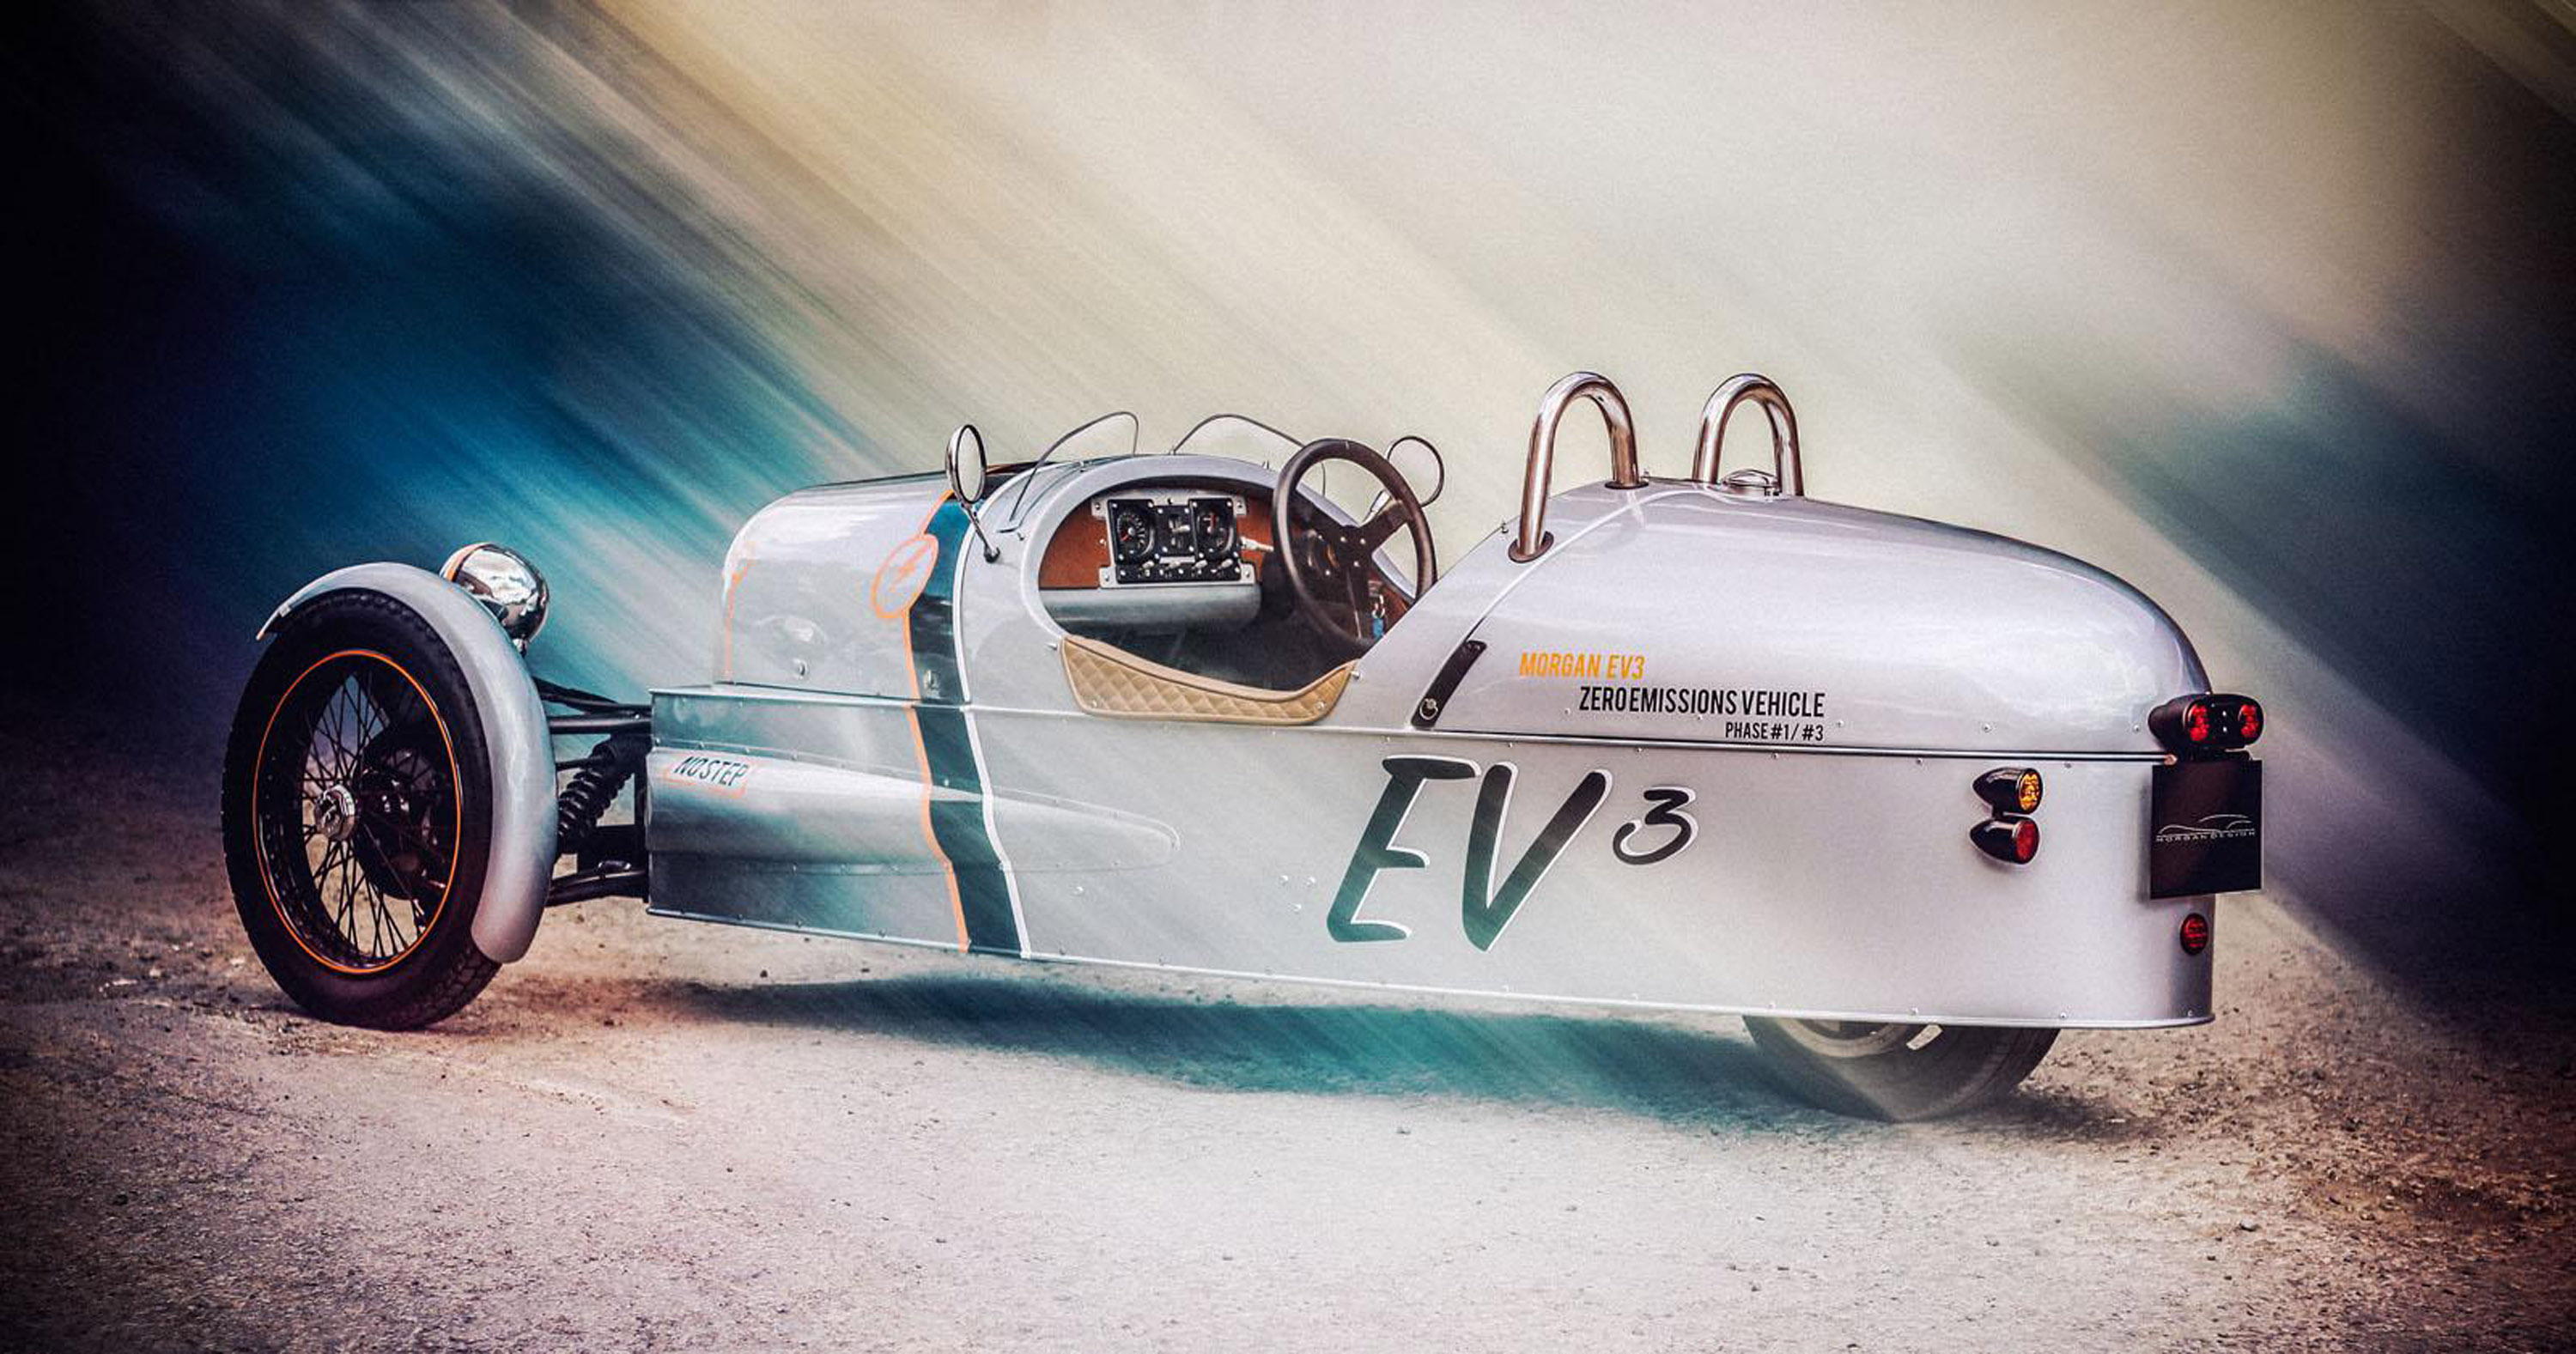 Morgan EV3 Concept